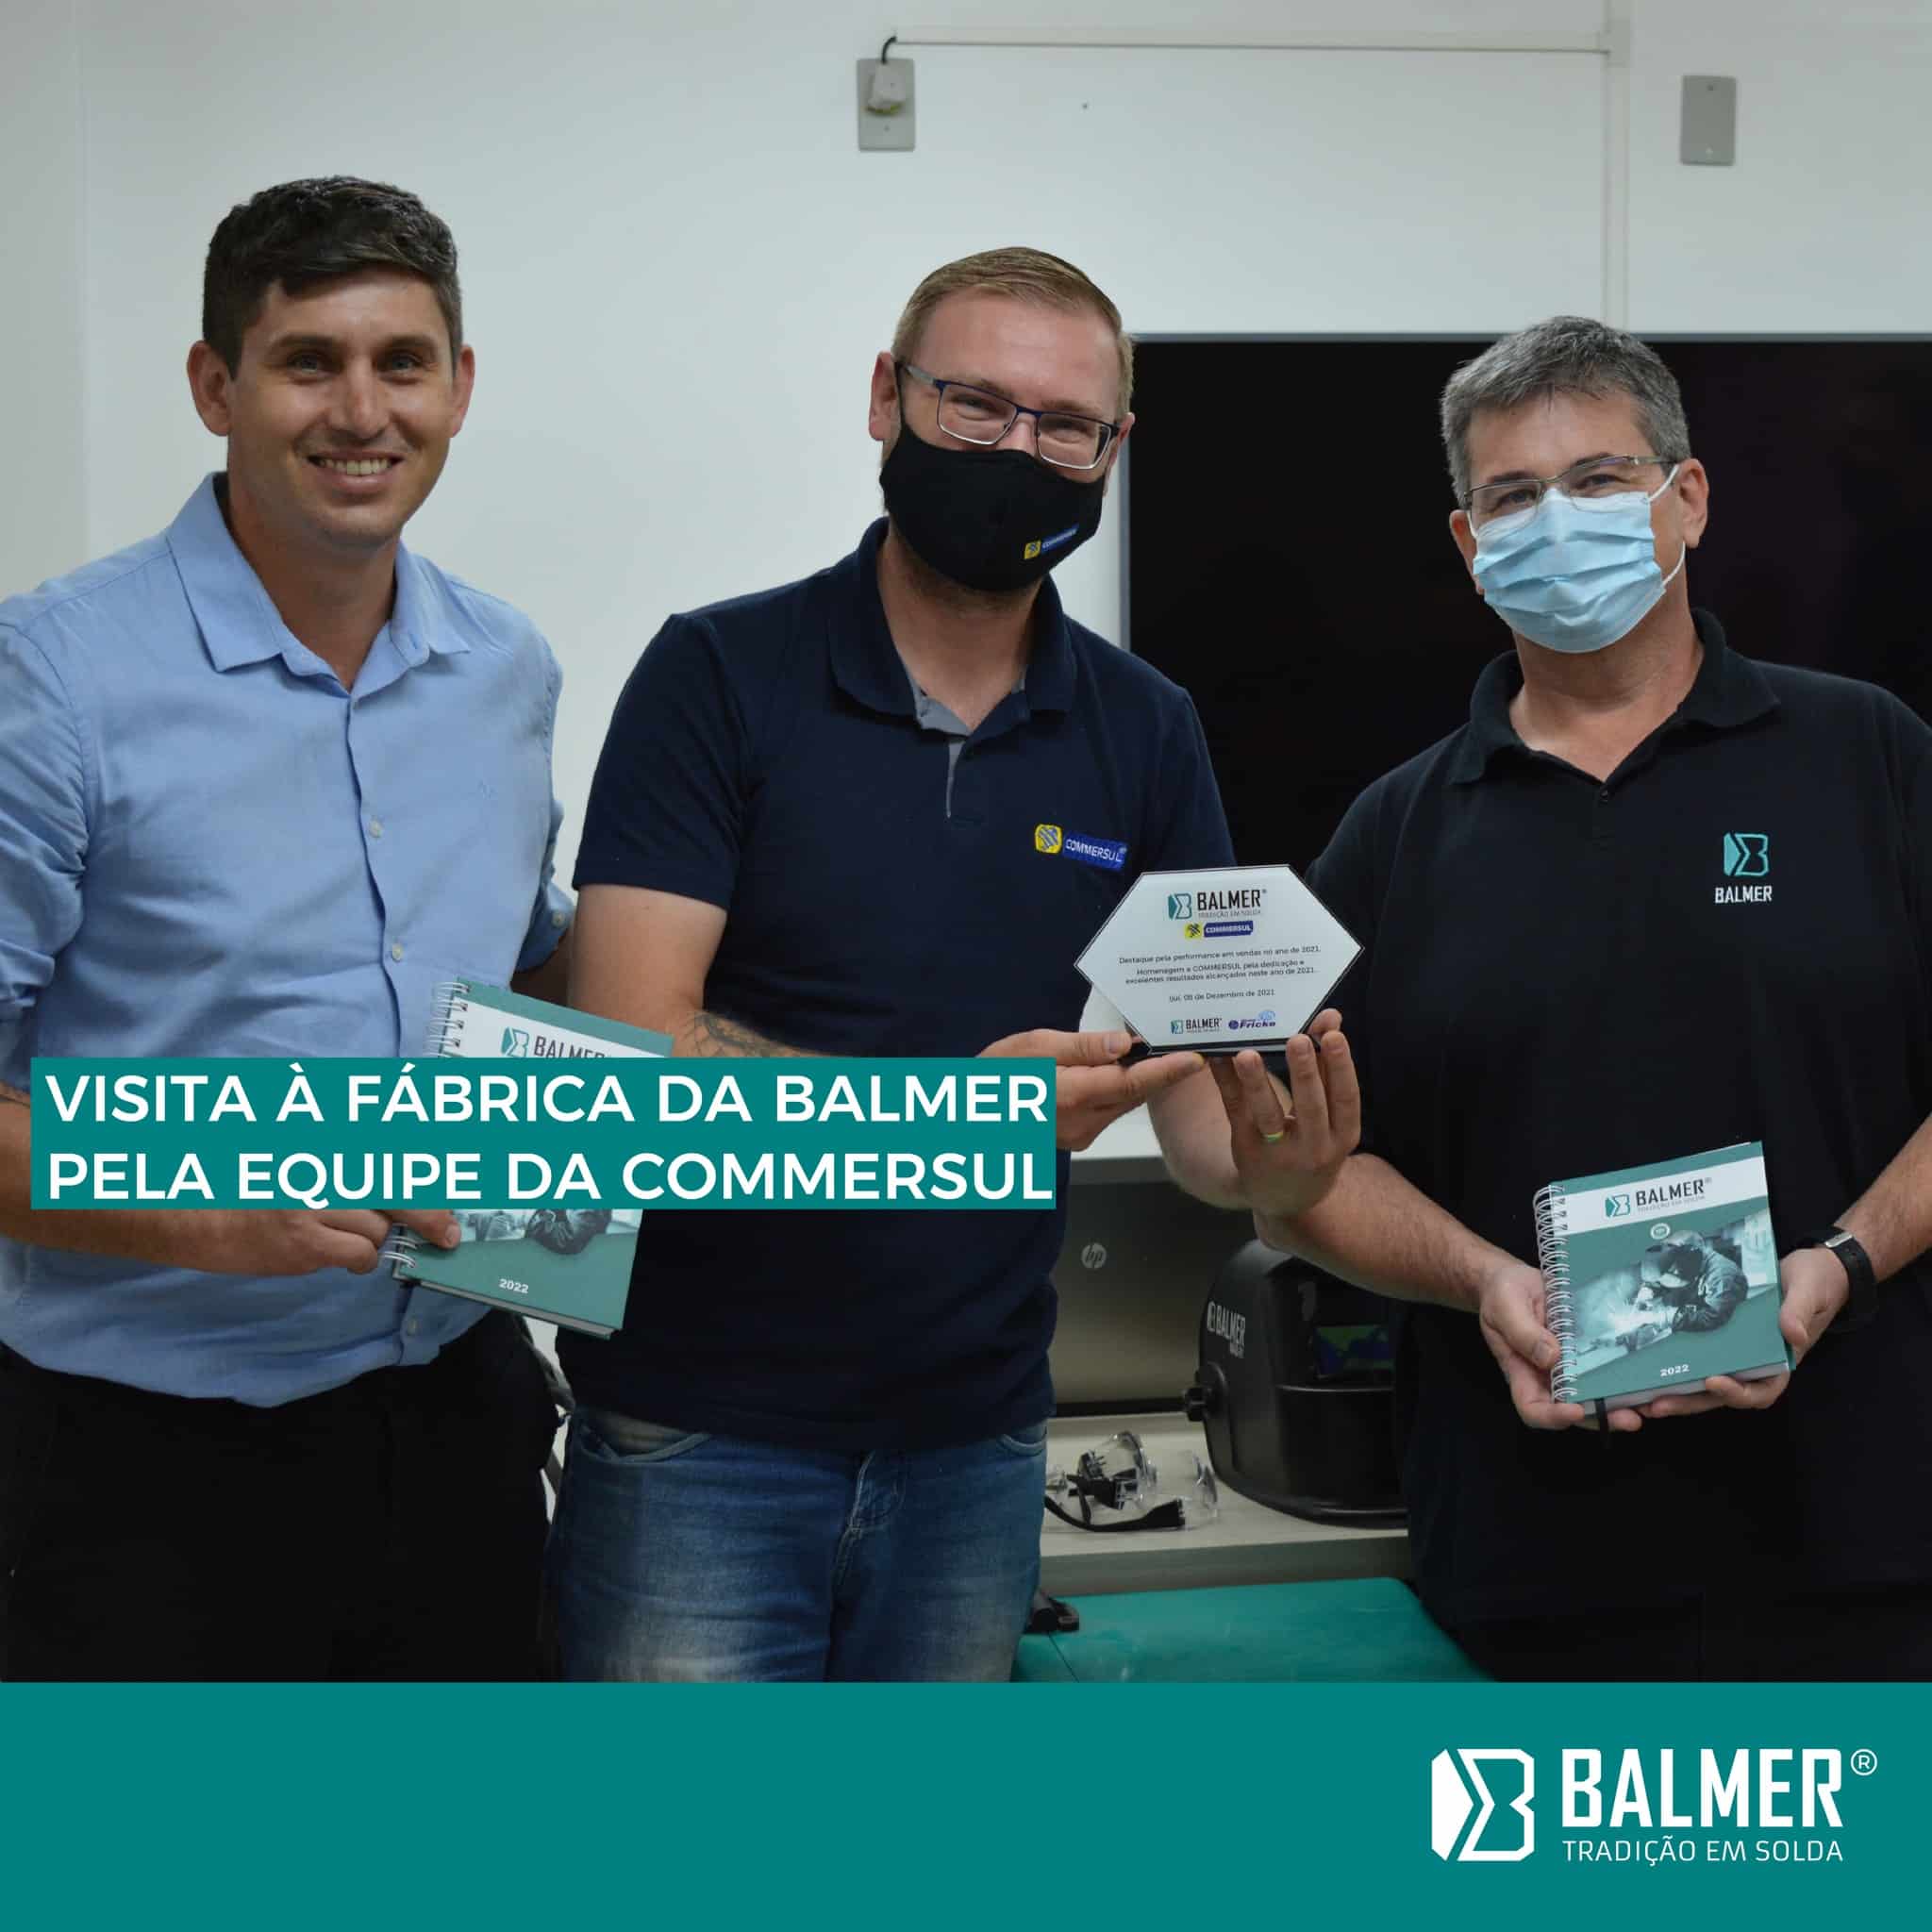 Visita a fábrica da BALMER pela equipe da Commersul